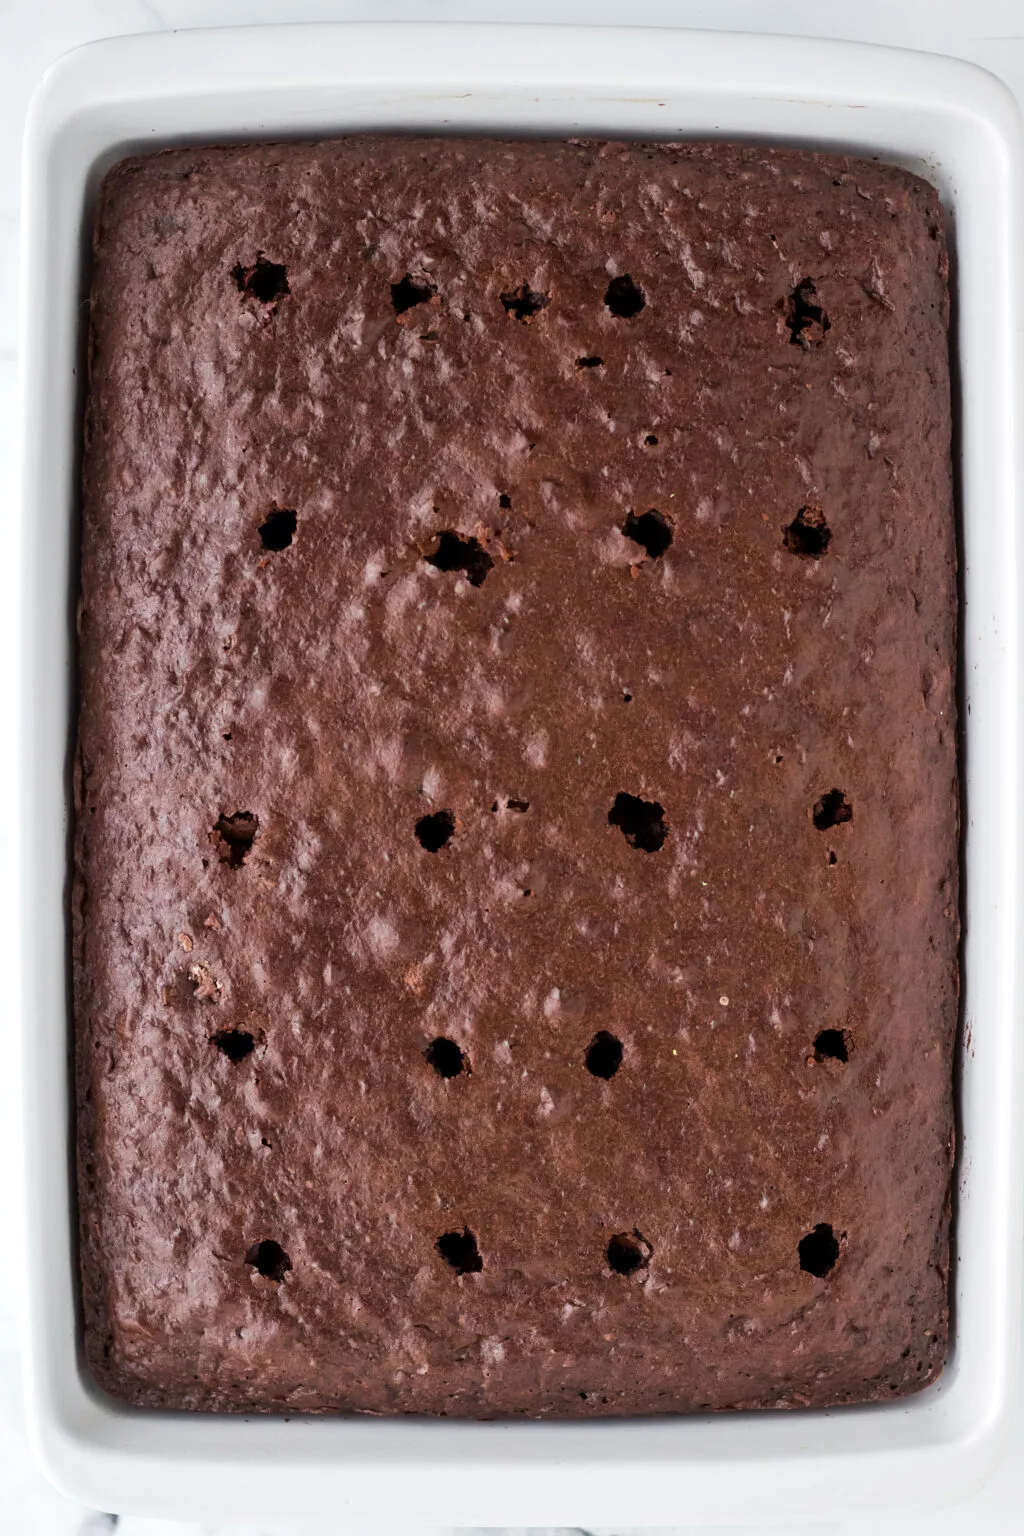 holes poked into chocolate cake for oreo poke cake filling